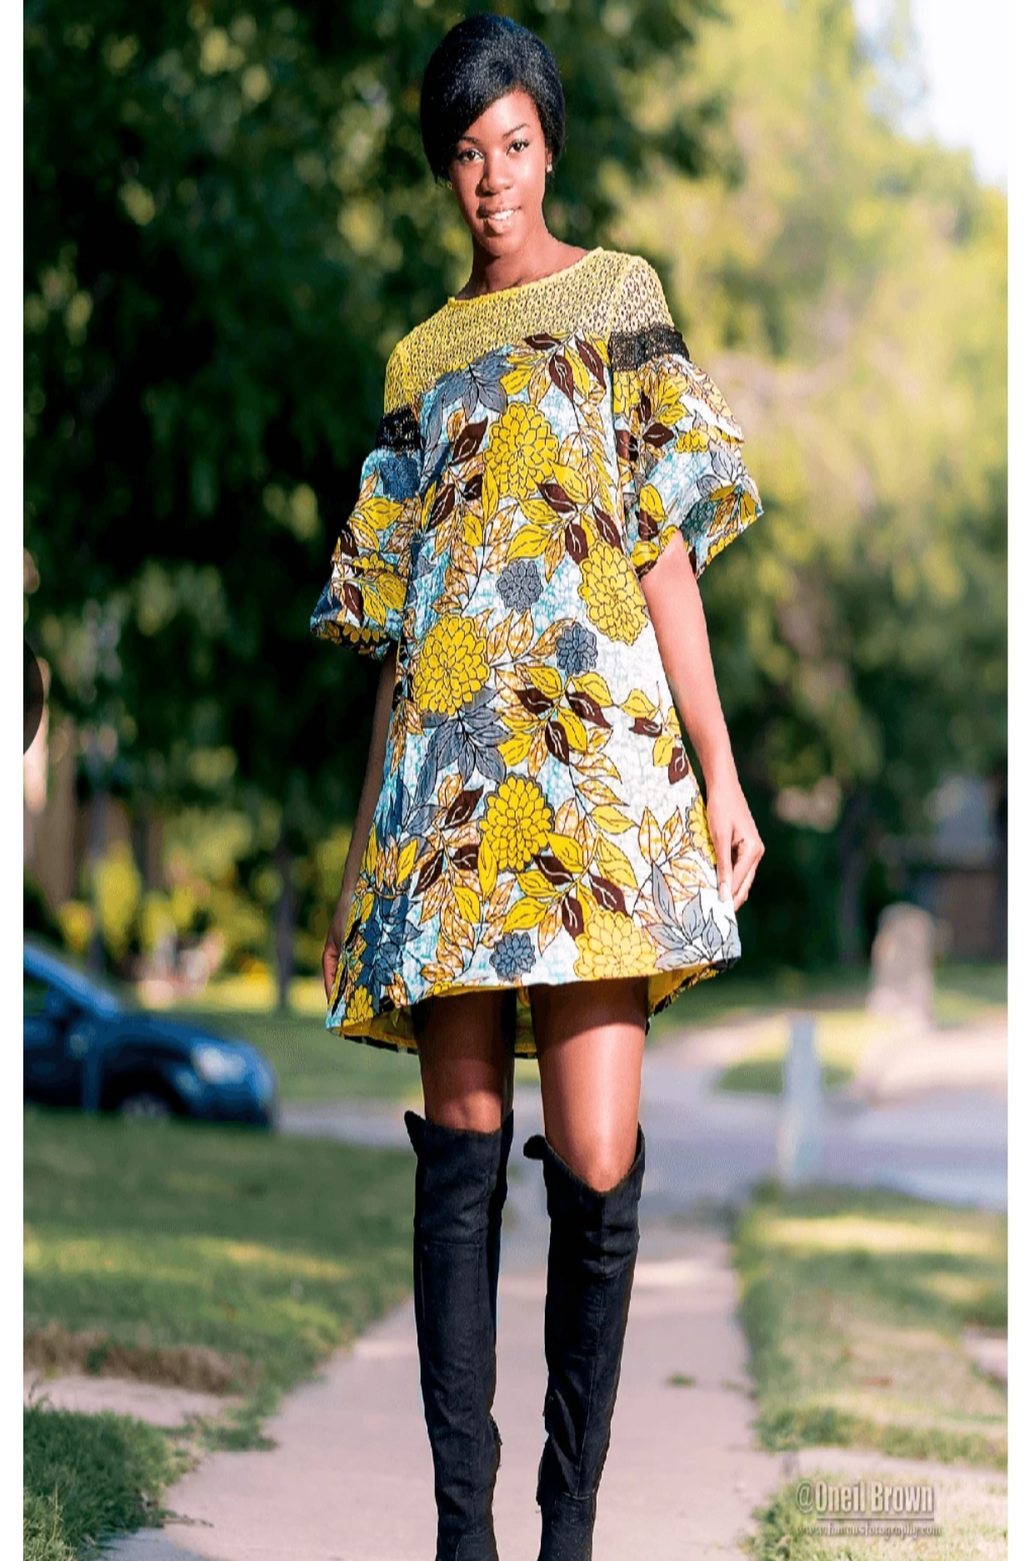 African Print Dress